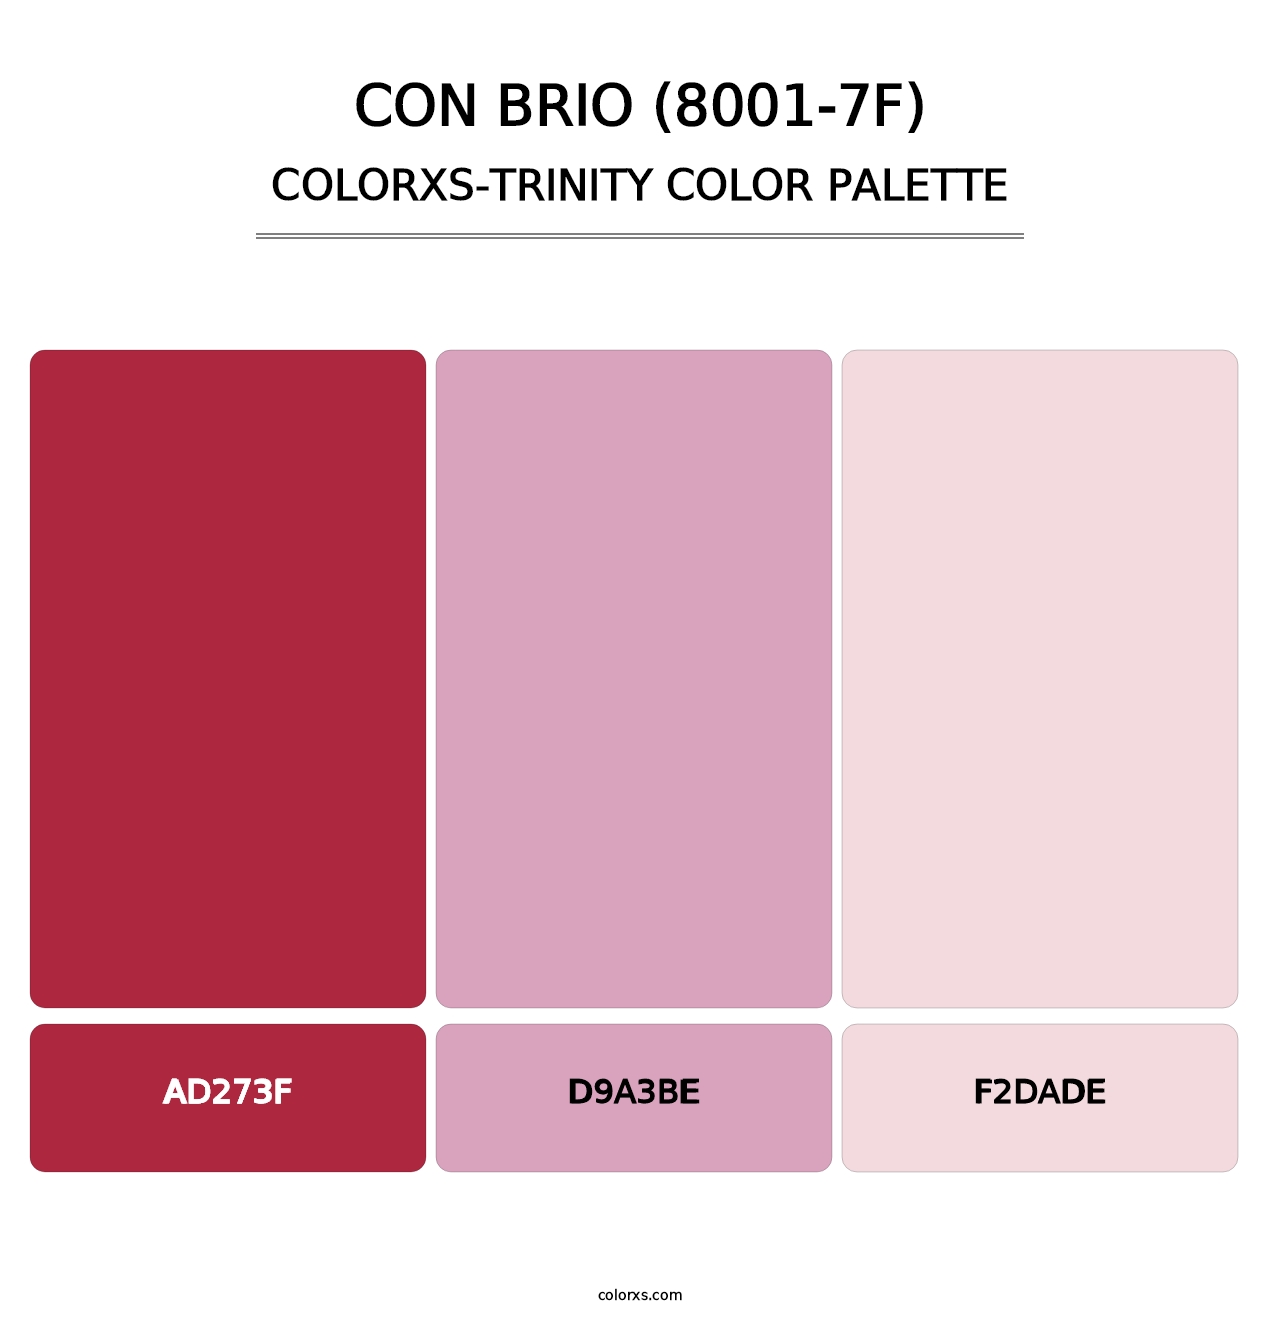 Con Brio (8001-7F) - Colorxs Trinity Palette